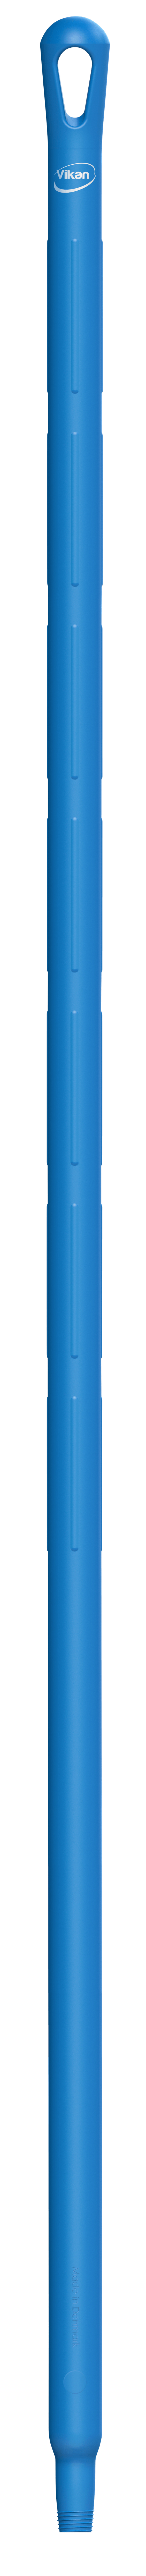 Vikan Ultra Hygiene Steel 1500mm 29623 blauw